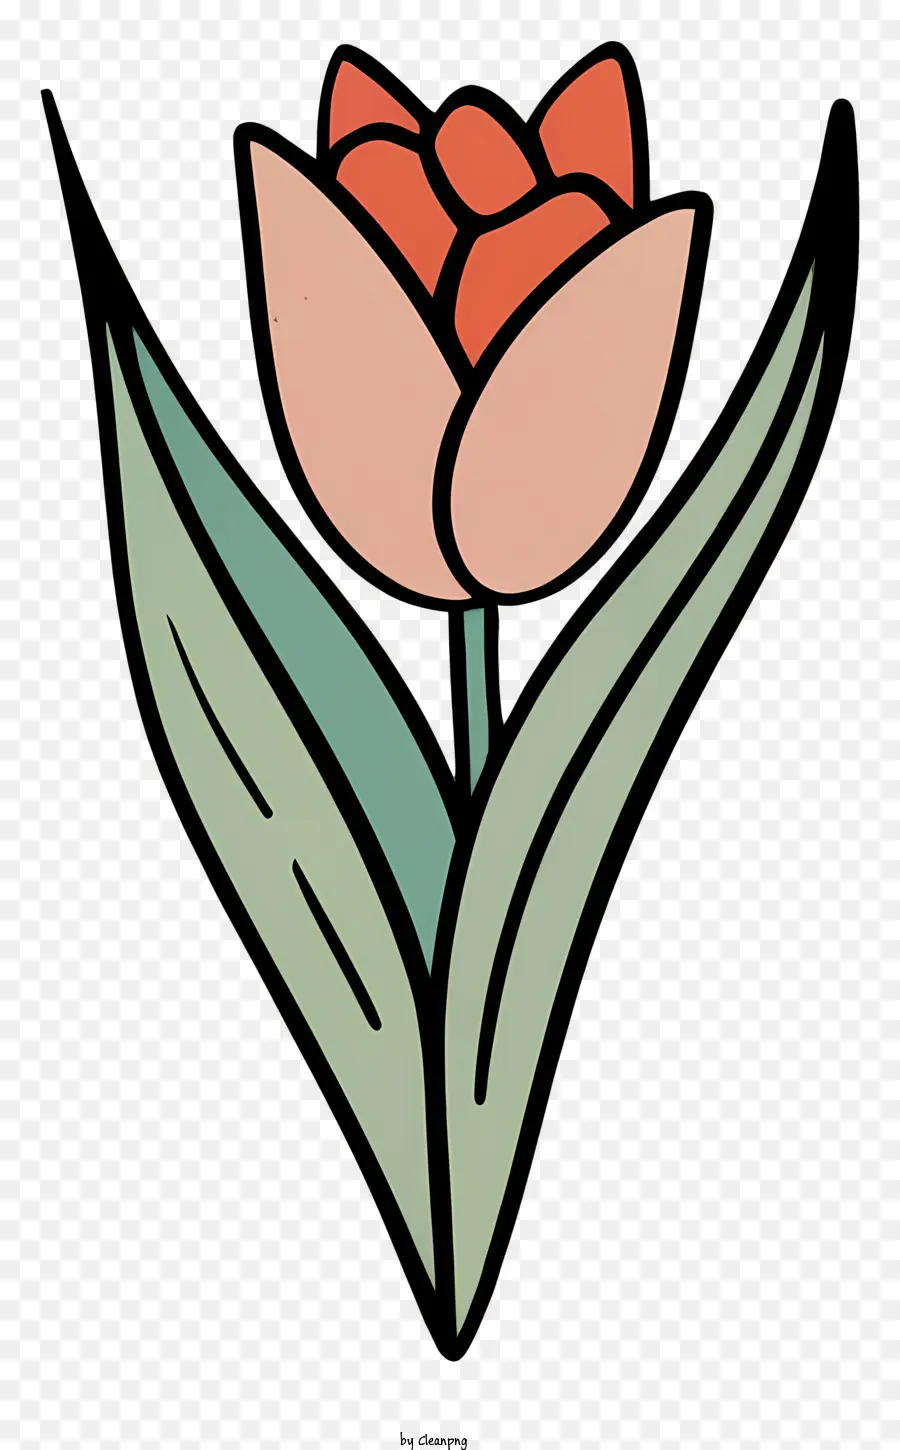 Hoa tulip hoa màu xanh lá cây hoa tulip phải - Hoa tulip đỏ với thân và lá xanh